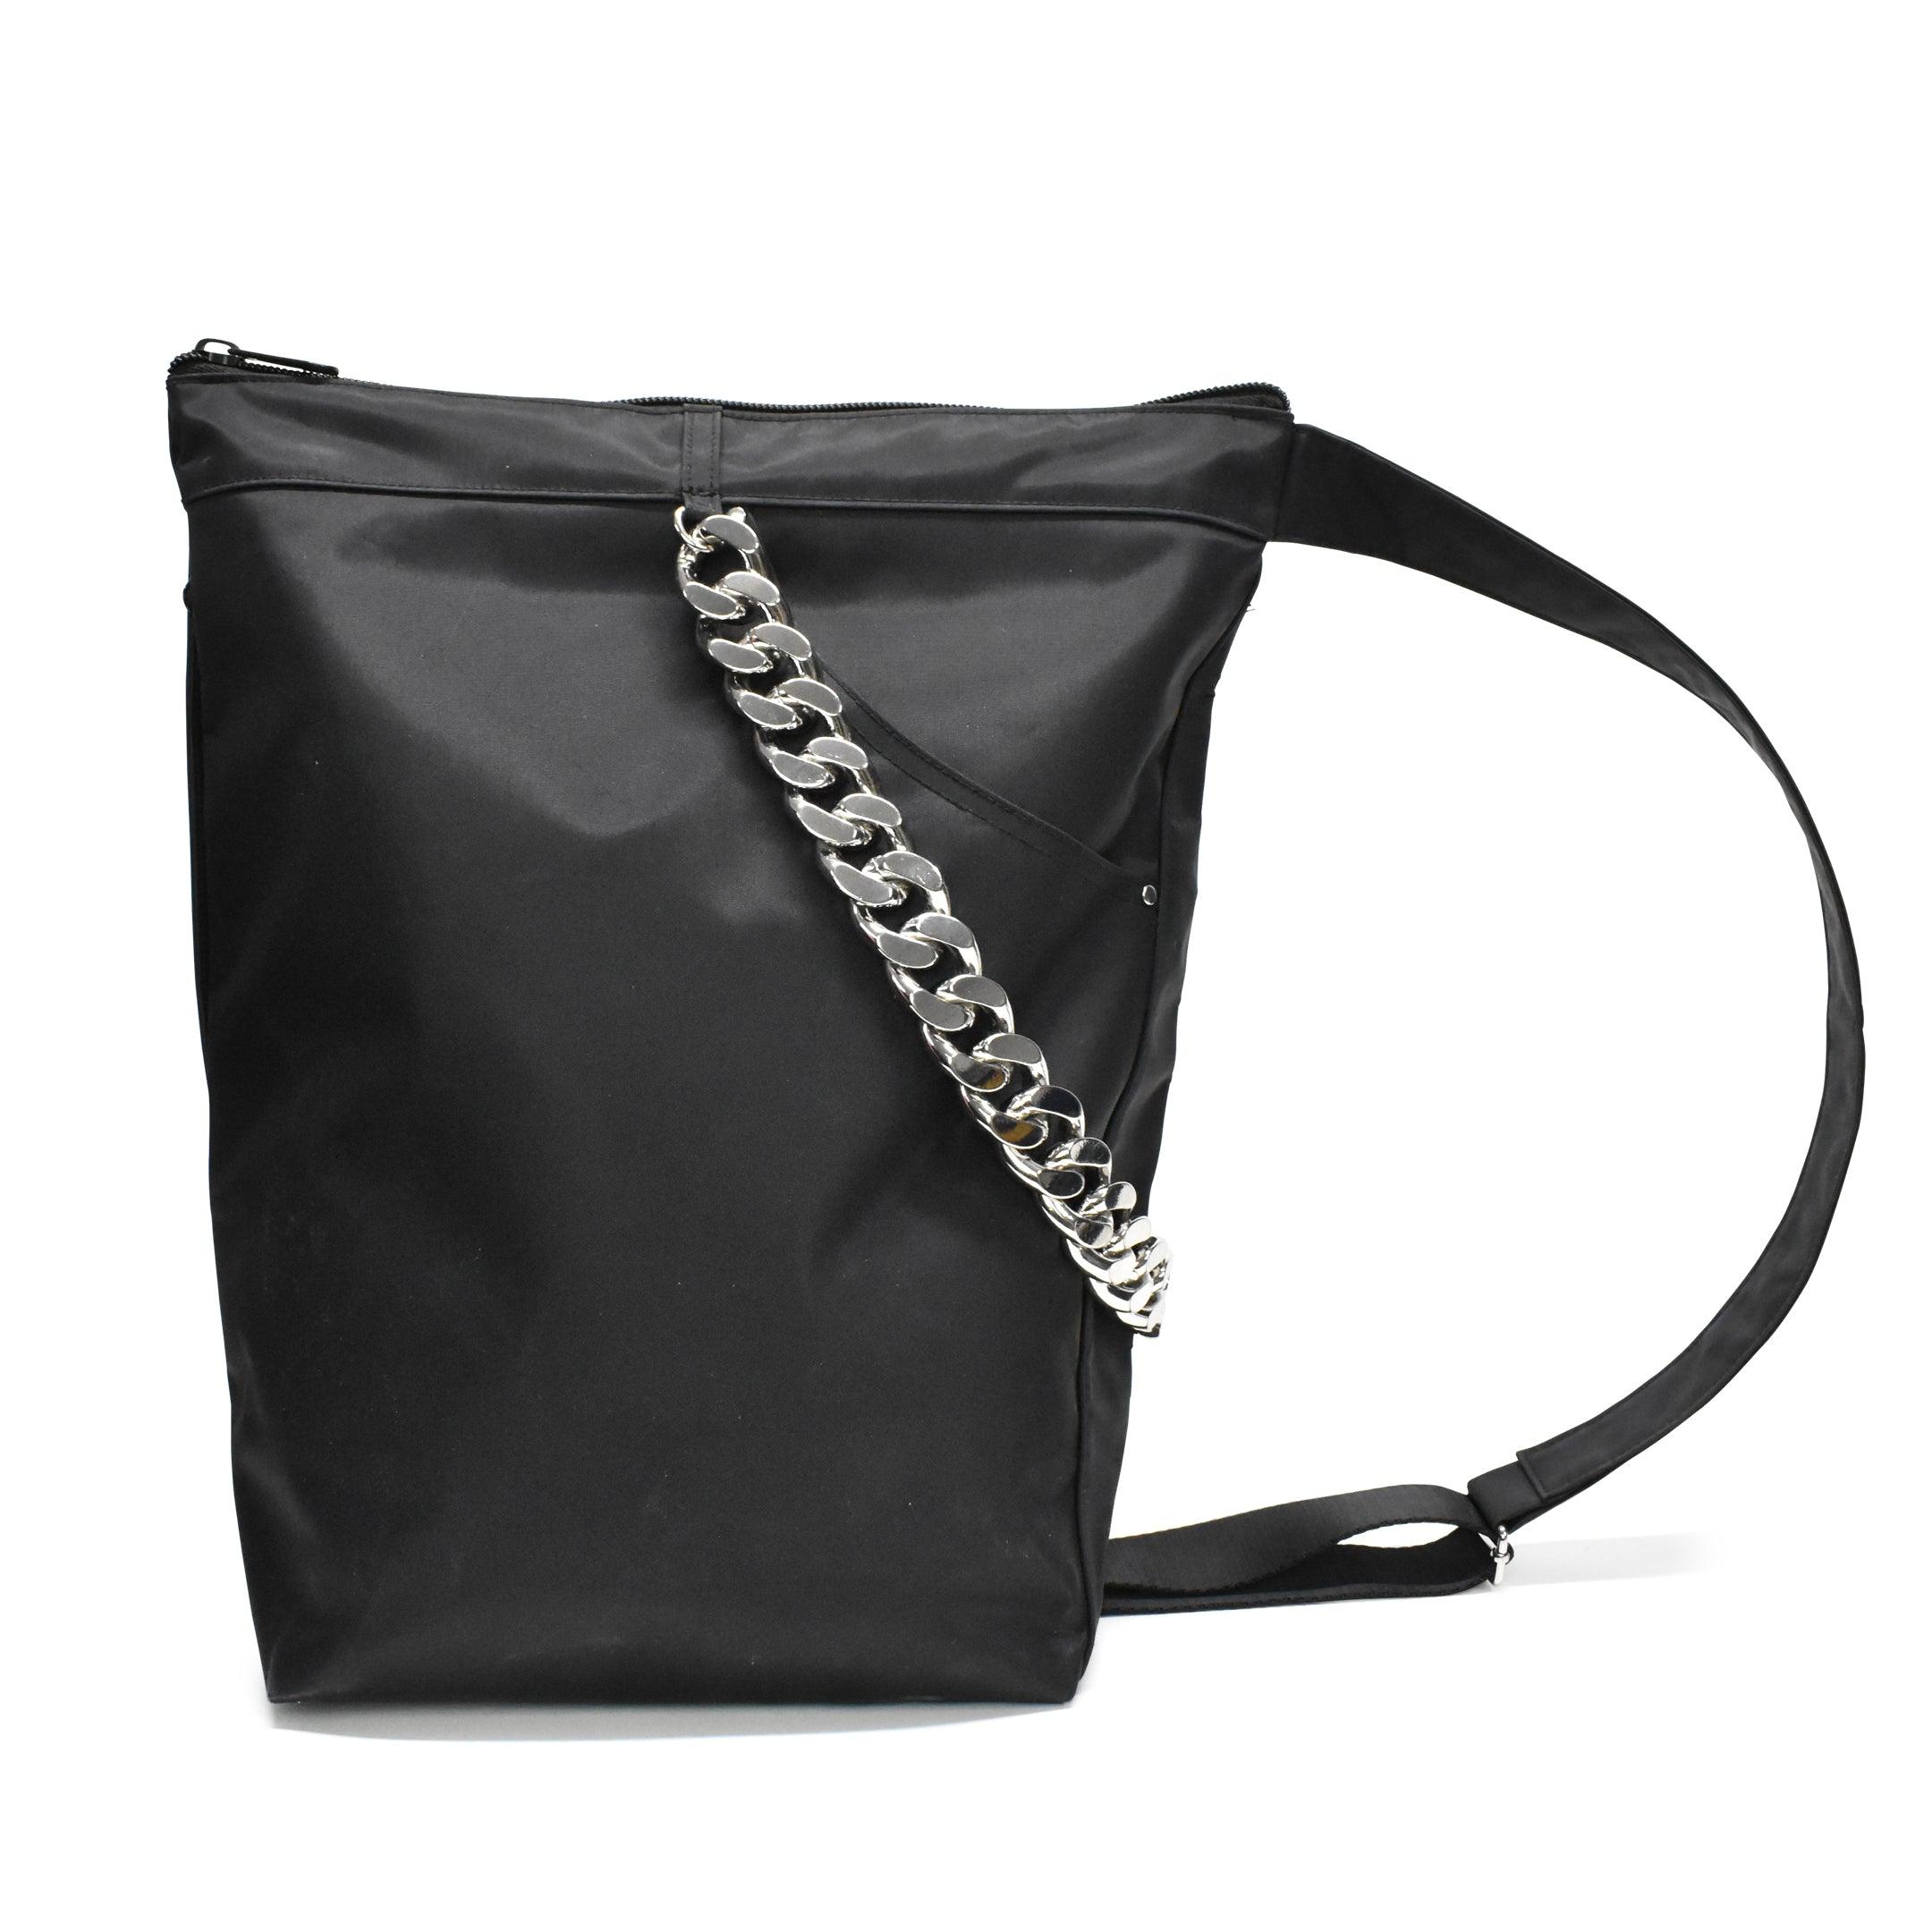 Kara 'Sling Backpack' Shoulder Bag - Fashionably Yours